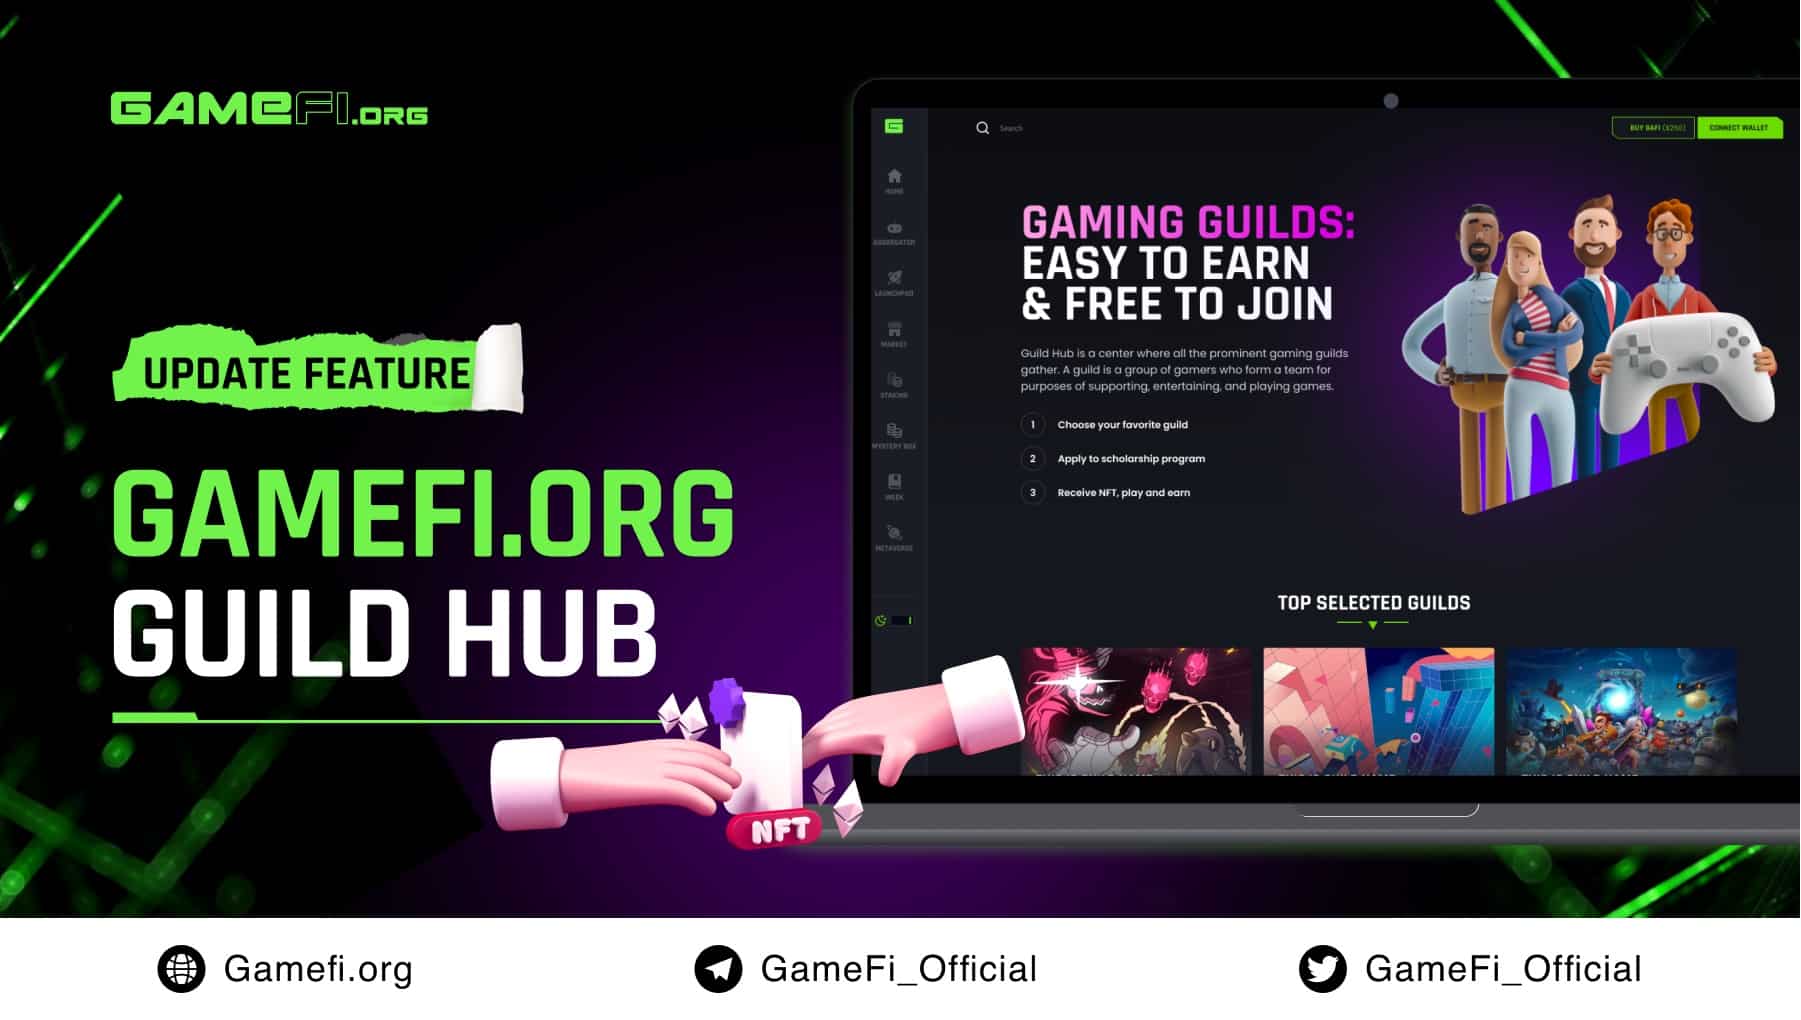 GameFi.org ra mắt “Guild Hub” nhằm tối ưu hóa công cuộc chơi game của cộng đồng